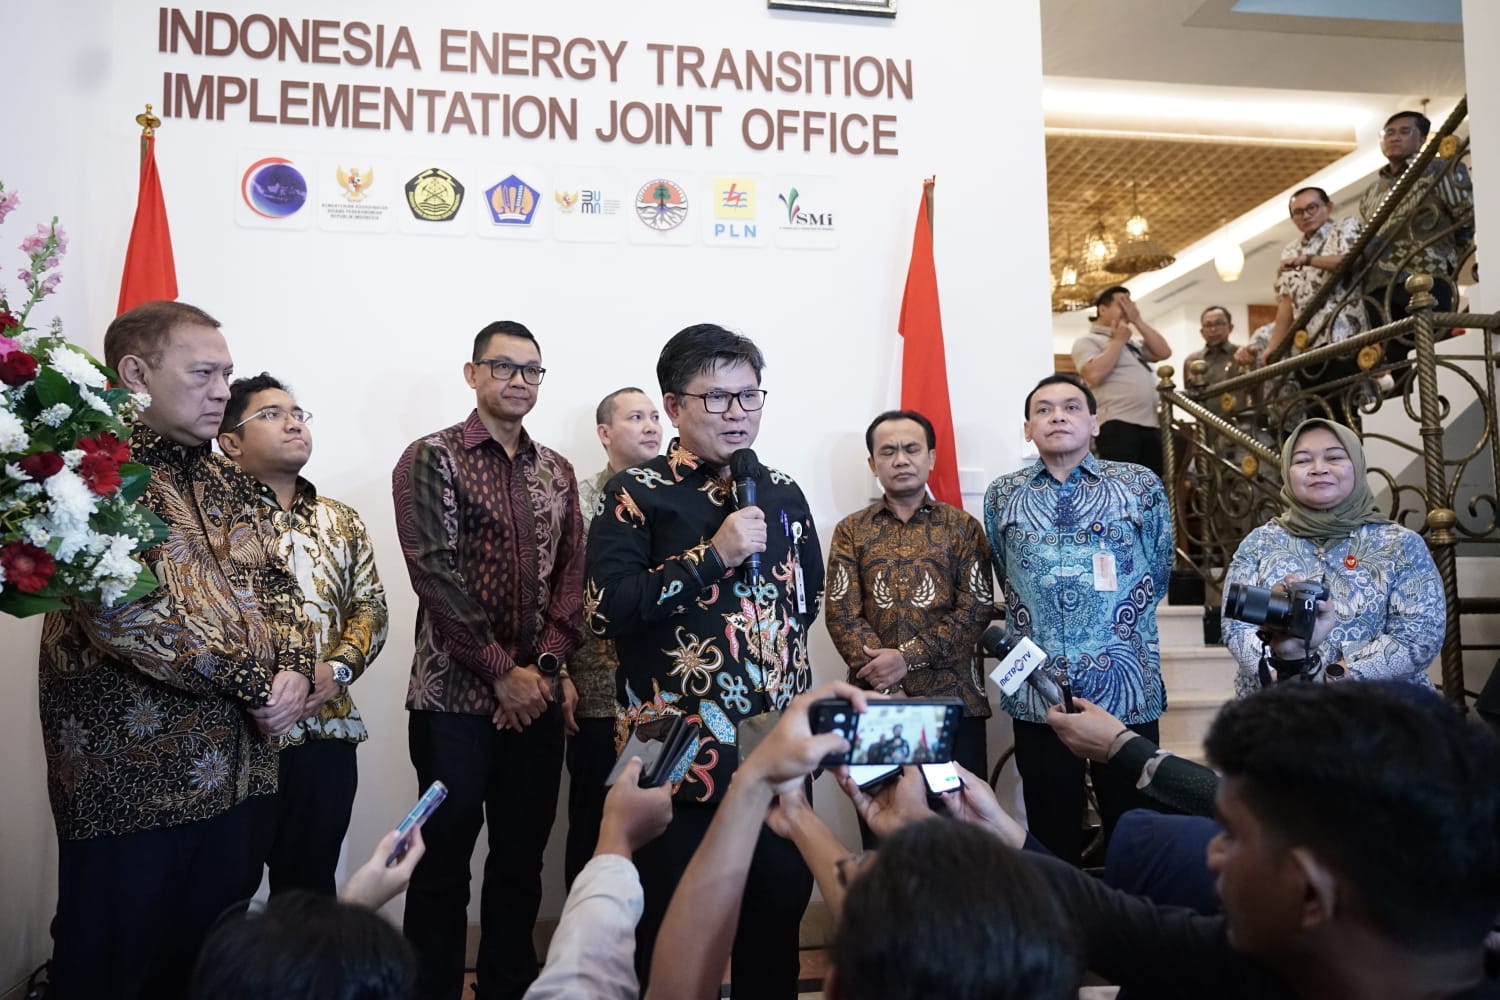 Direktur Jenderal Ketenagalistrikan Kementerian Energi Sumber Daya Mineral (ESDM) Jisman P. Hutajulu menyatakan apresiasinya pada PLN atas fasilitas rumah bersama transisi energi nasional.